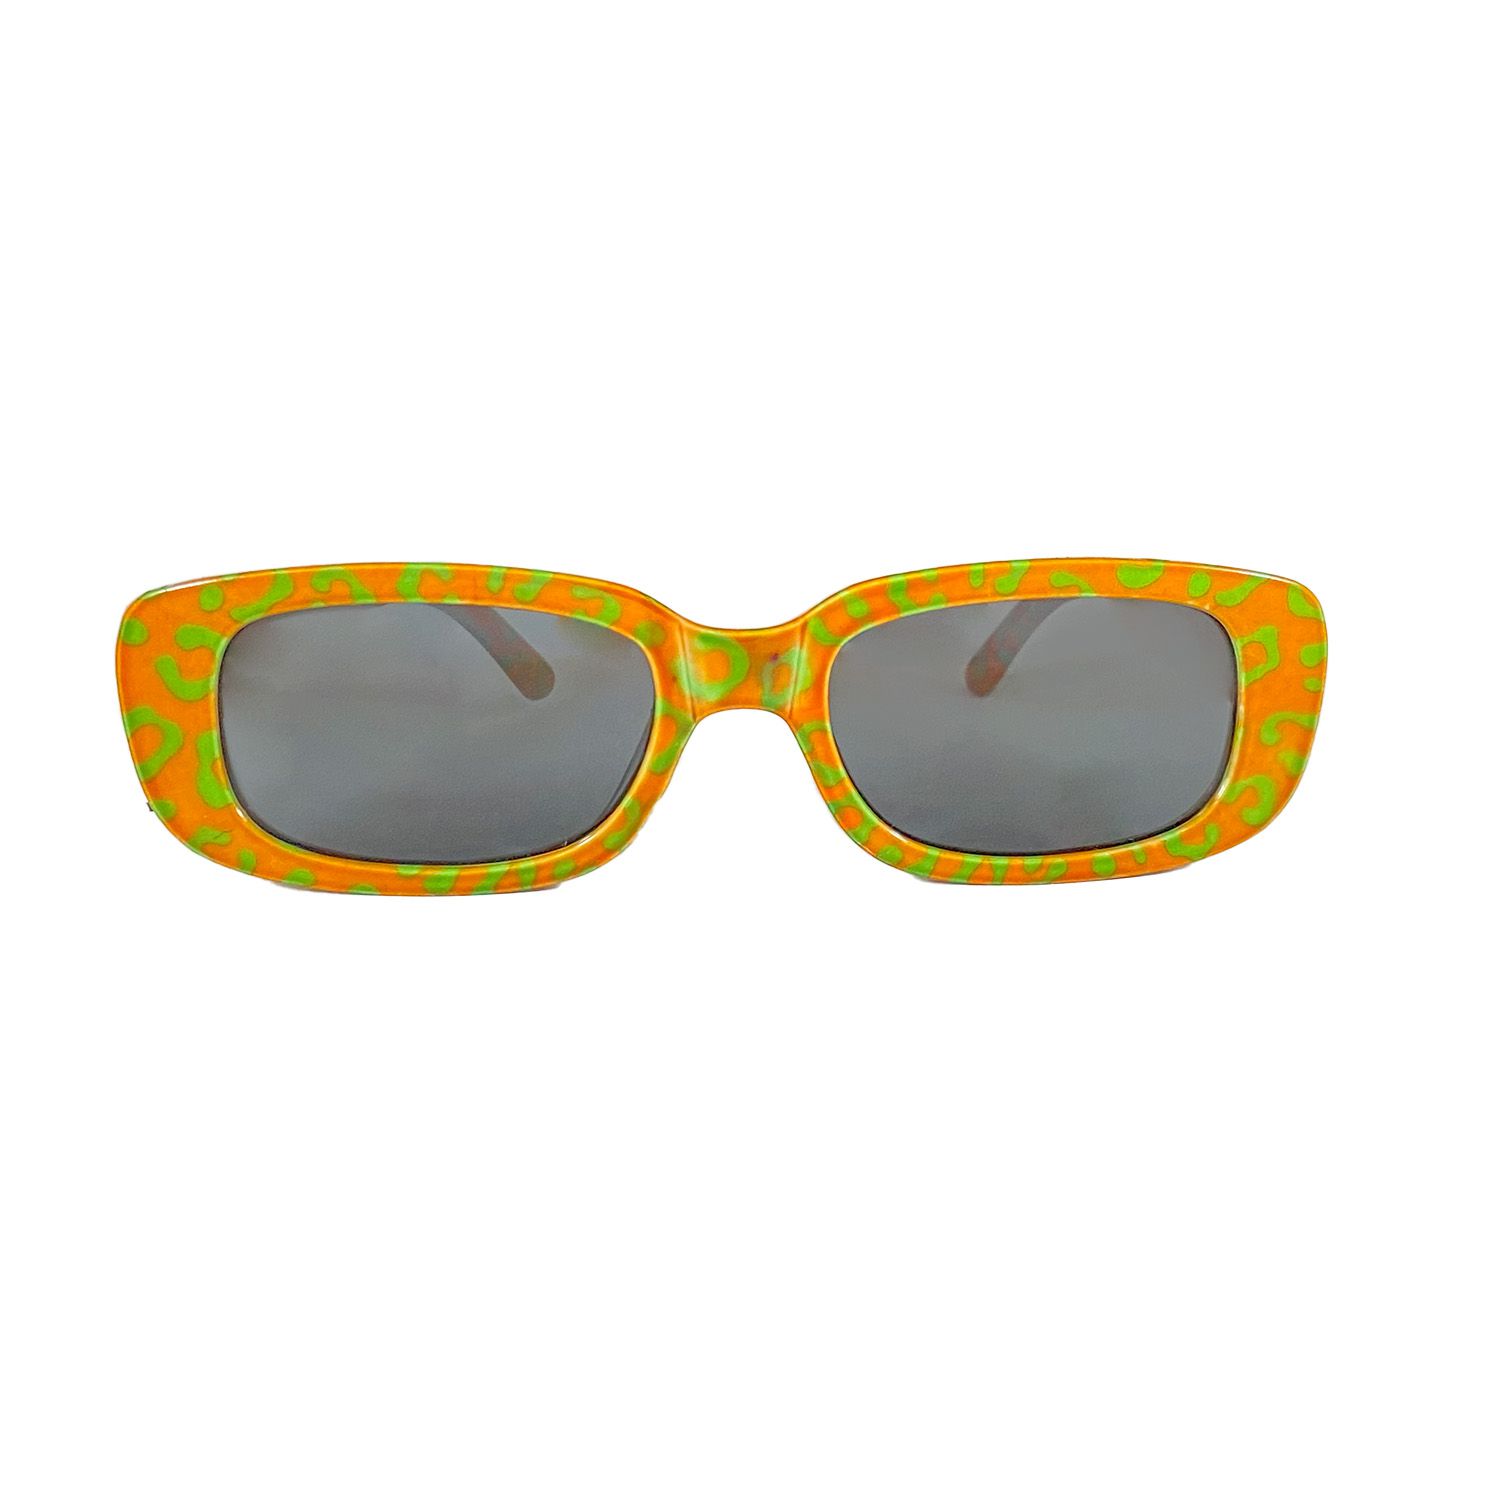 Kruikenstad zonnebril - Panterprint kopen